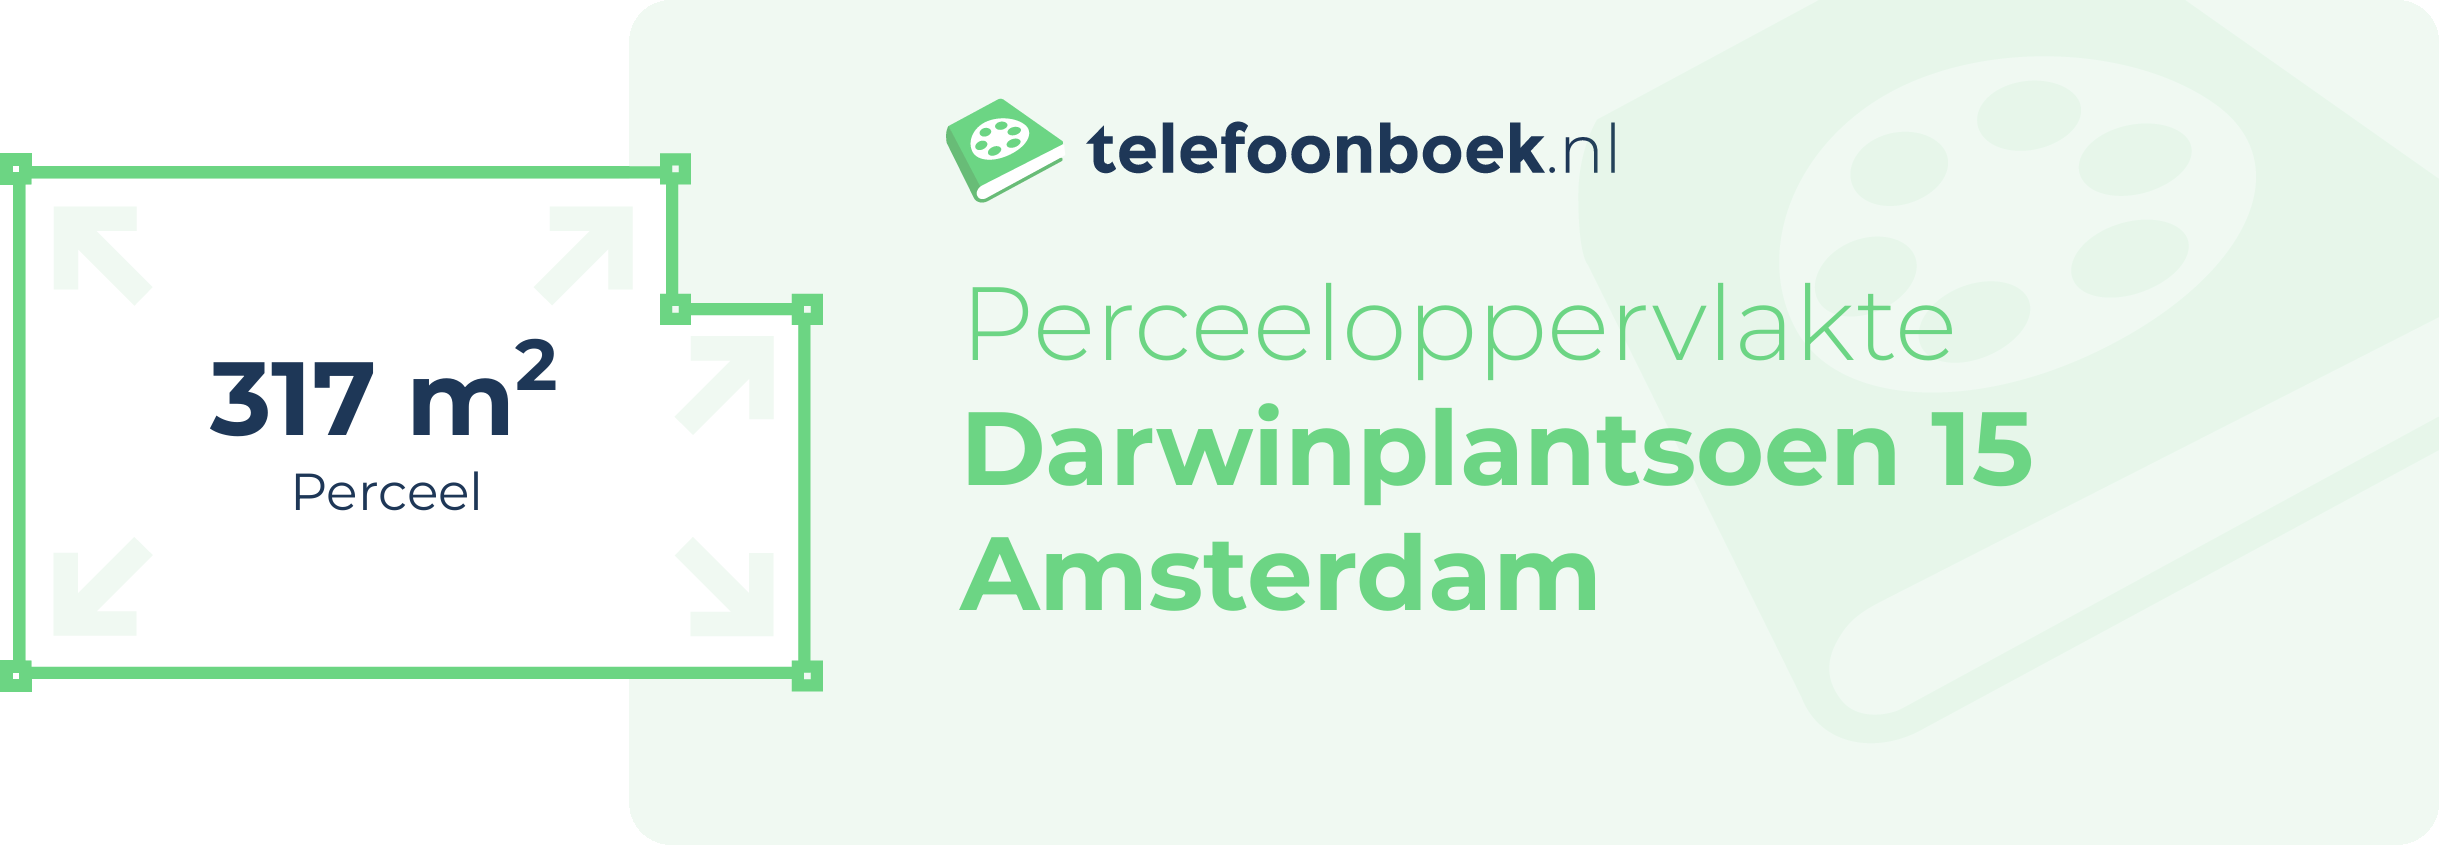 Perceeloppervlakte Darwinplantsoen 15 Amsterdam